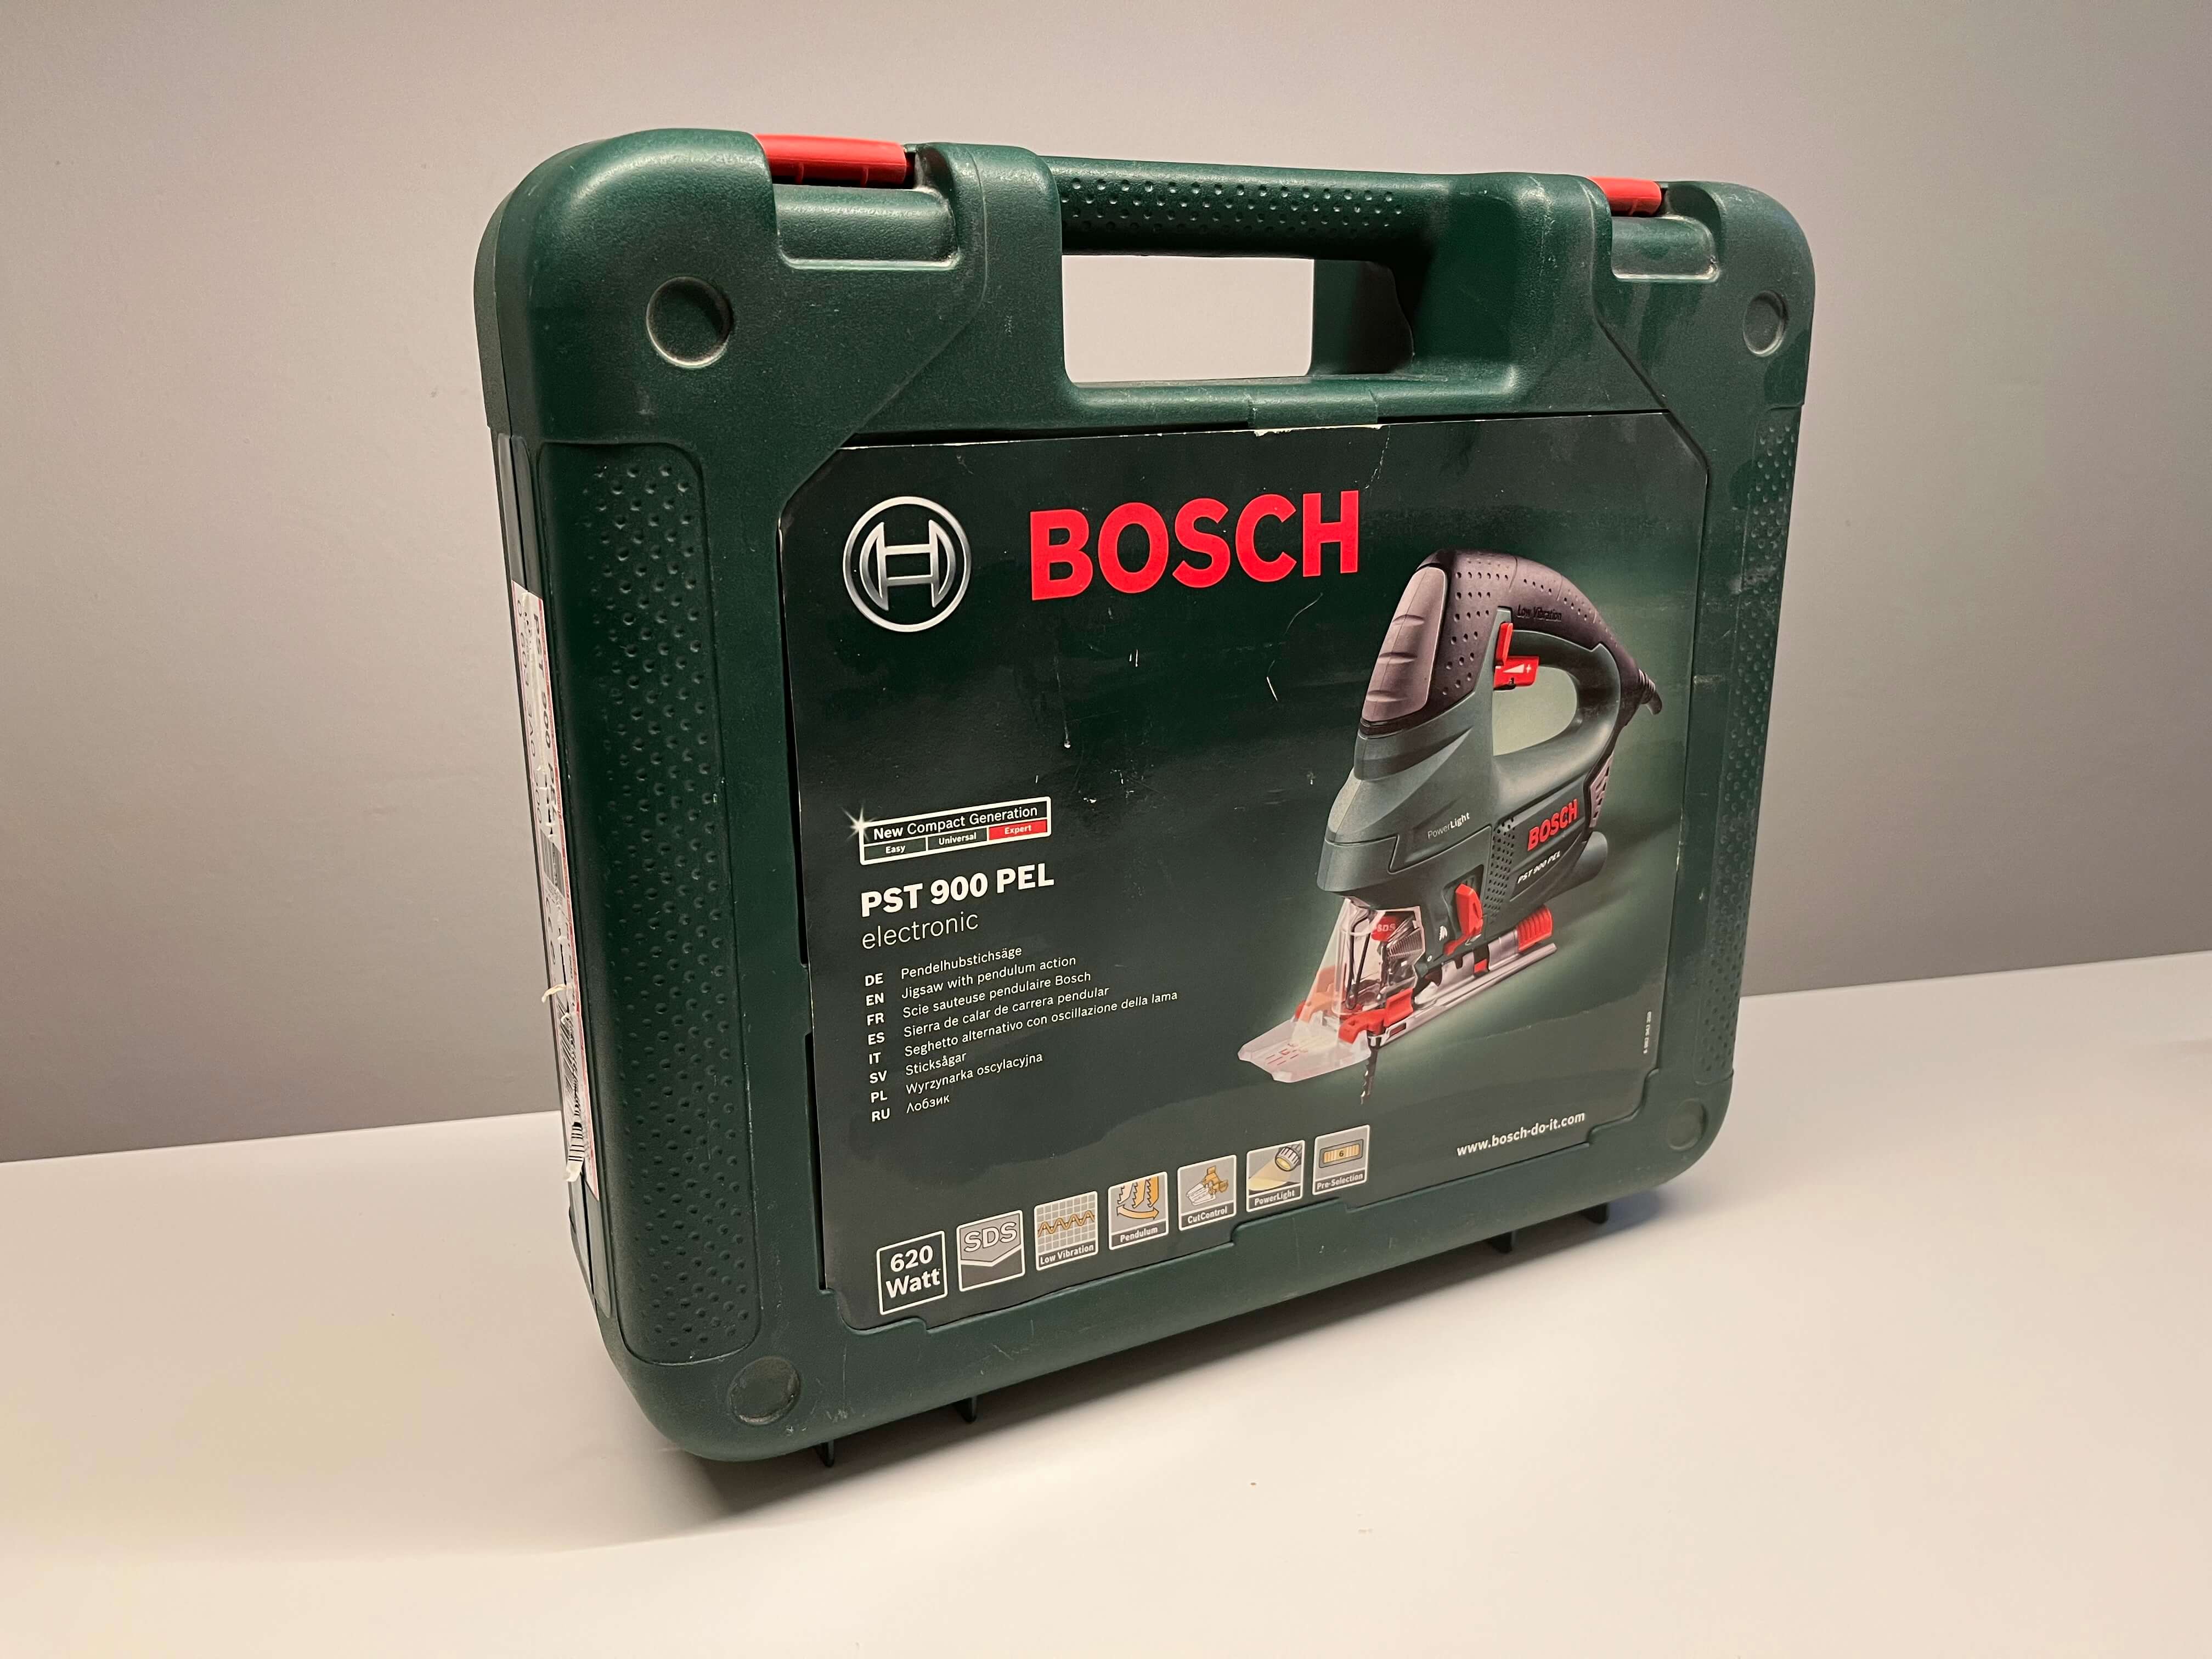 Stichsäge Bosch PST 900 PEL - 6e2fbeef-ef9b-4a73-9da4-98e6f7da3dcb